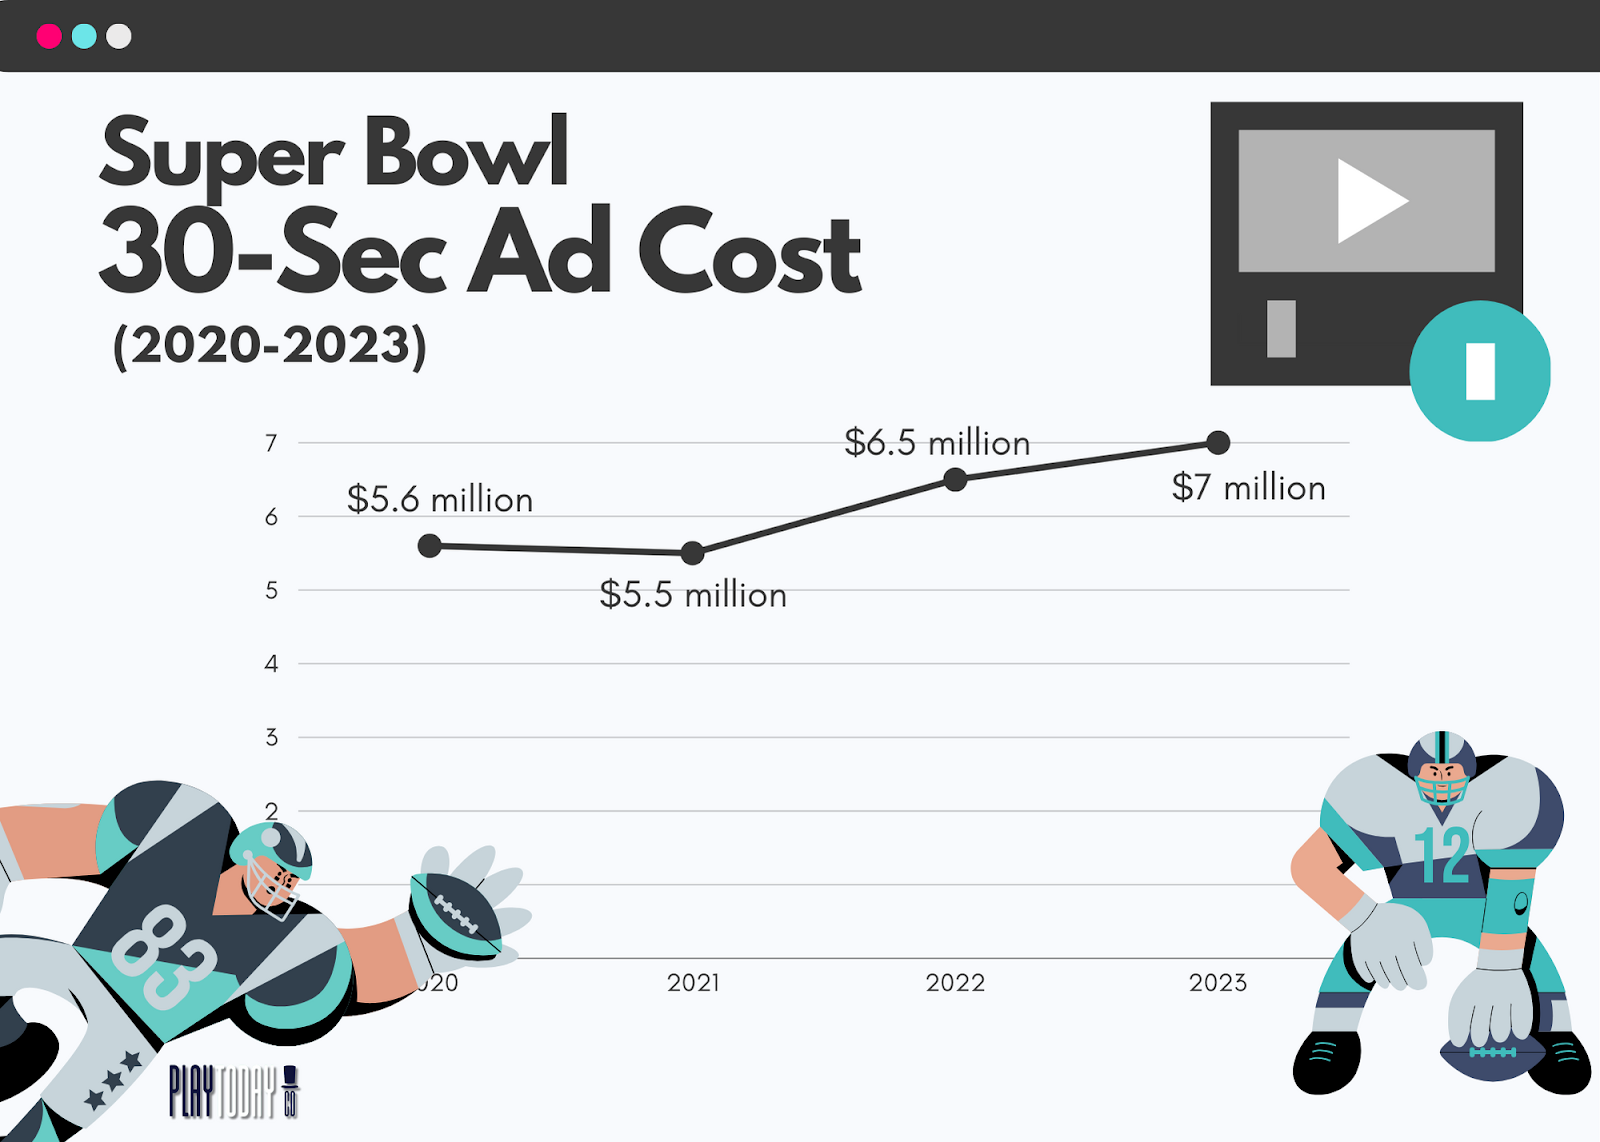 Super Bowl Ad Cost 2020-2023